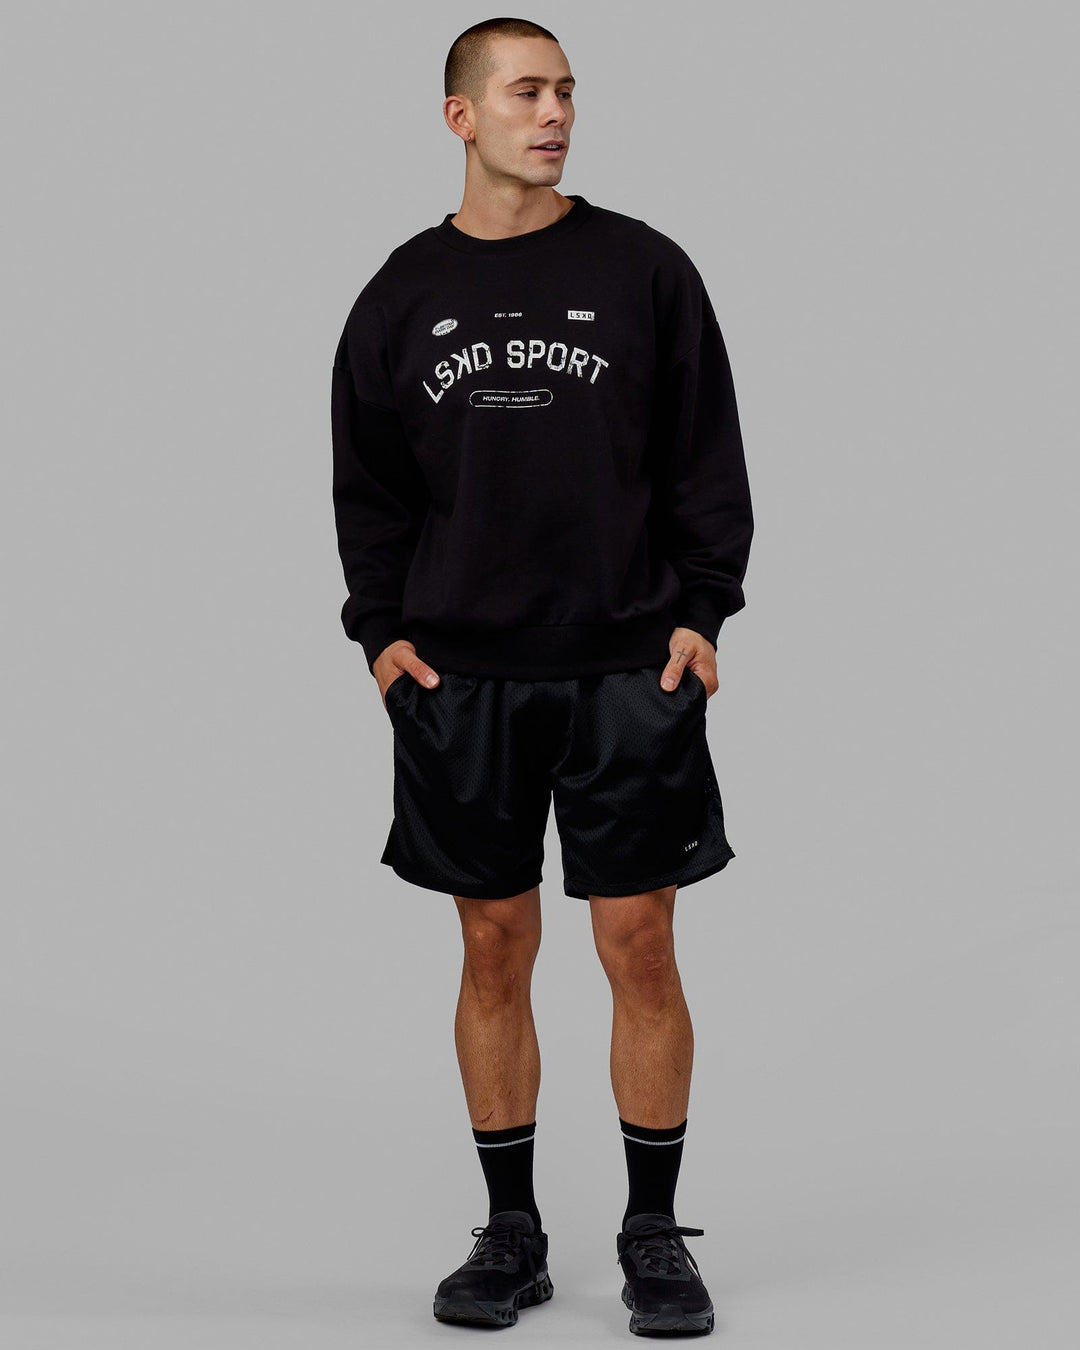 Man wearing Unisex Free Throw Sweater Oversize - Black